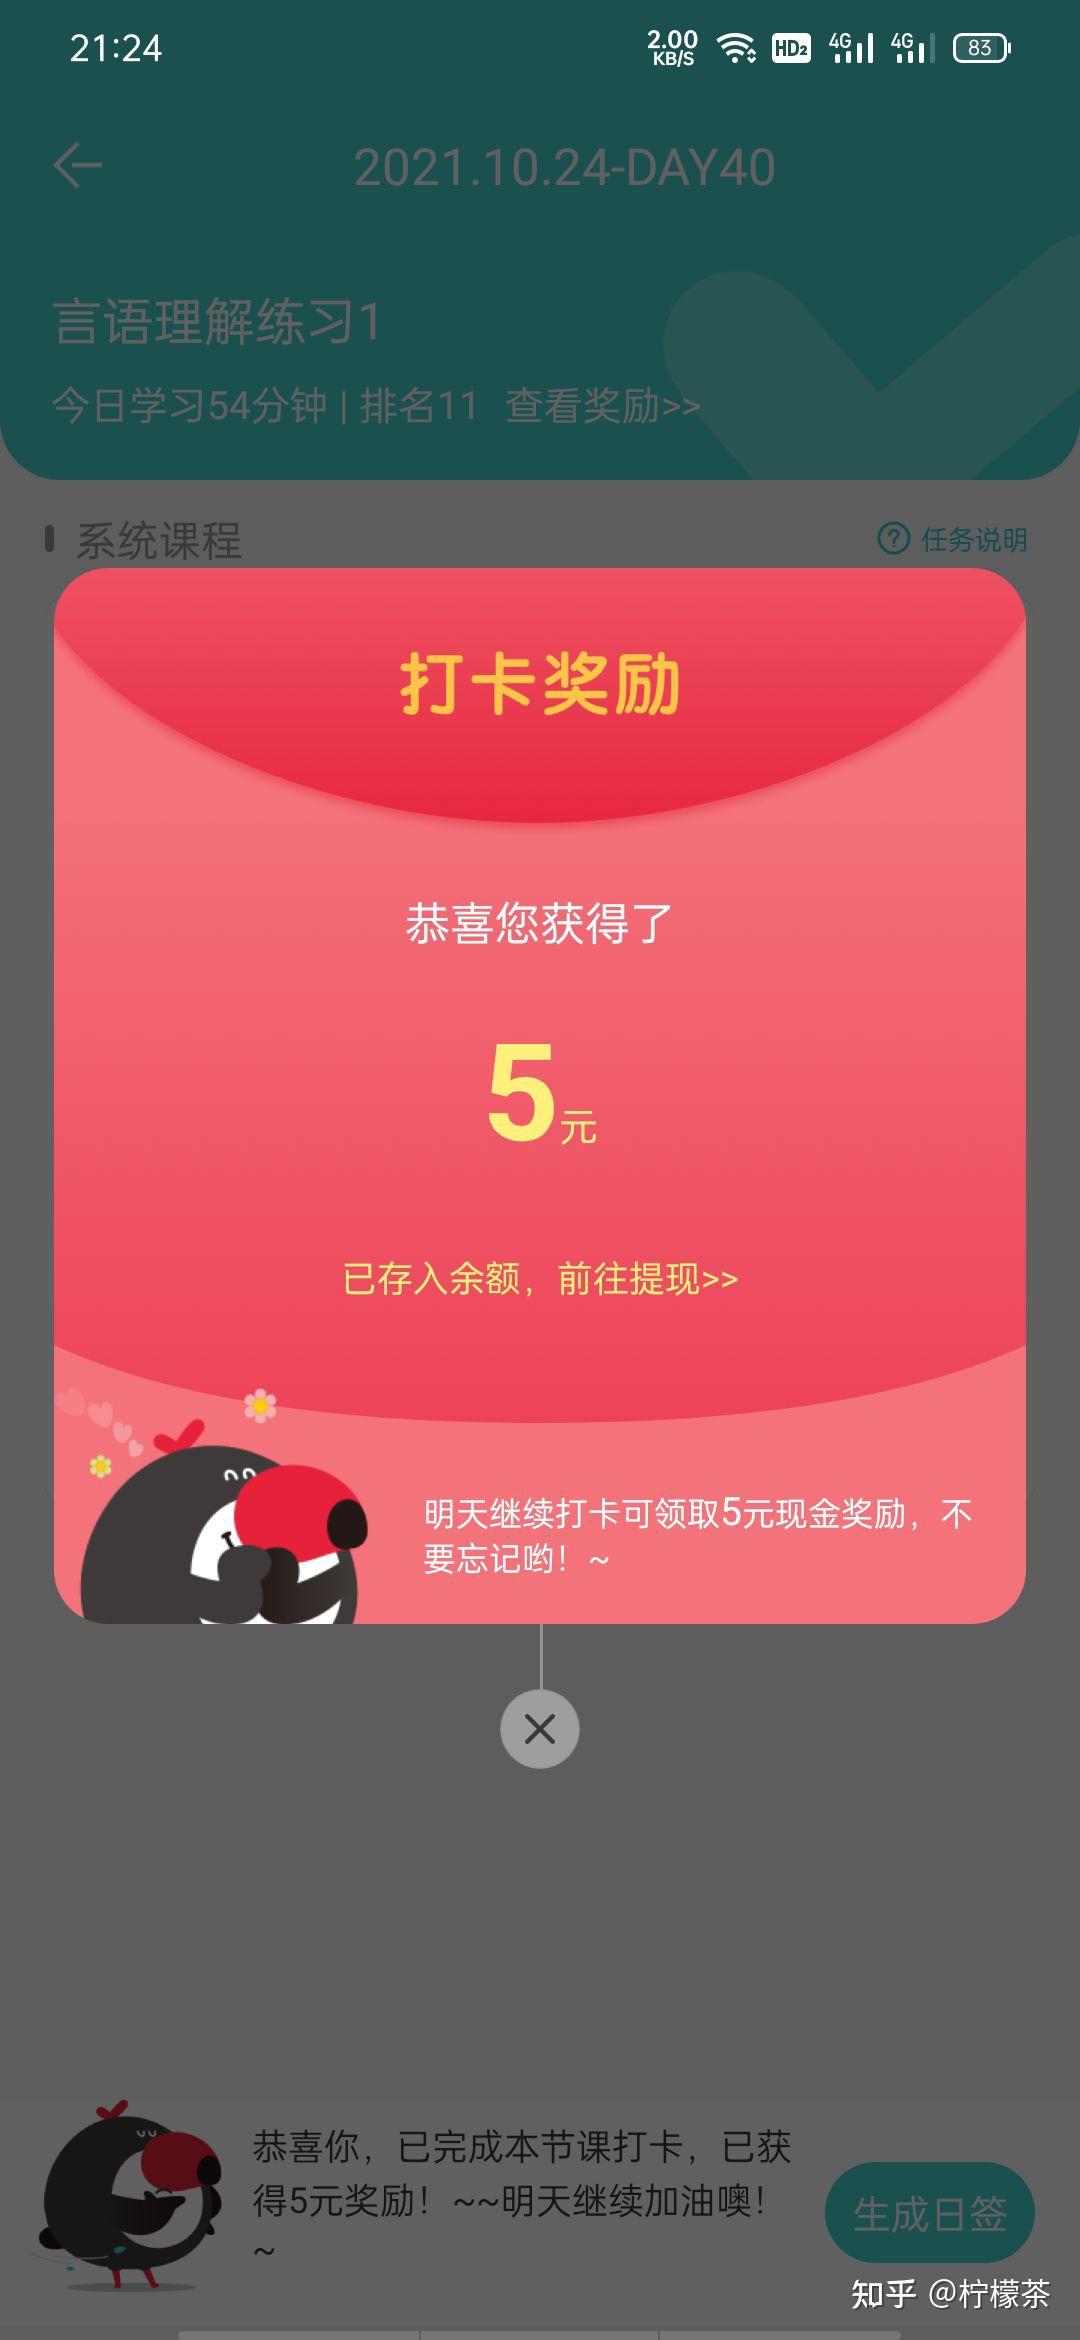 ‎《起风了 (电视剧《加油你是最棒的》主题曲) - Single》- 吴青峰的专辑 - Apple Music